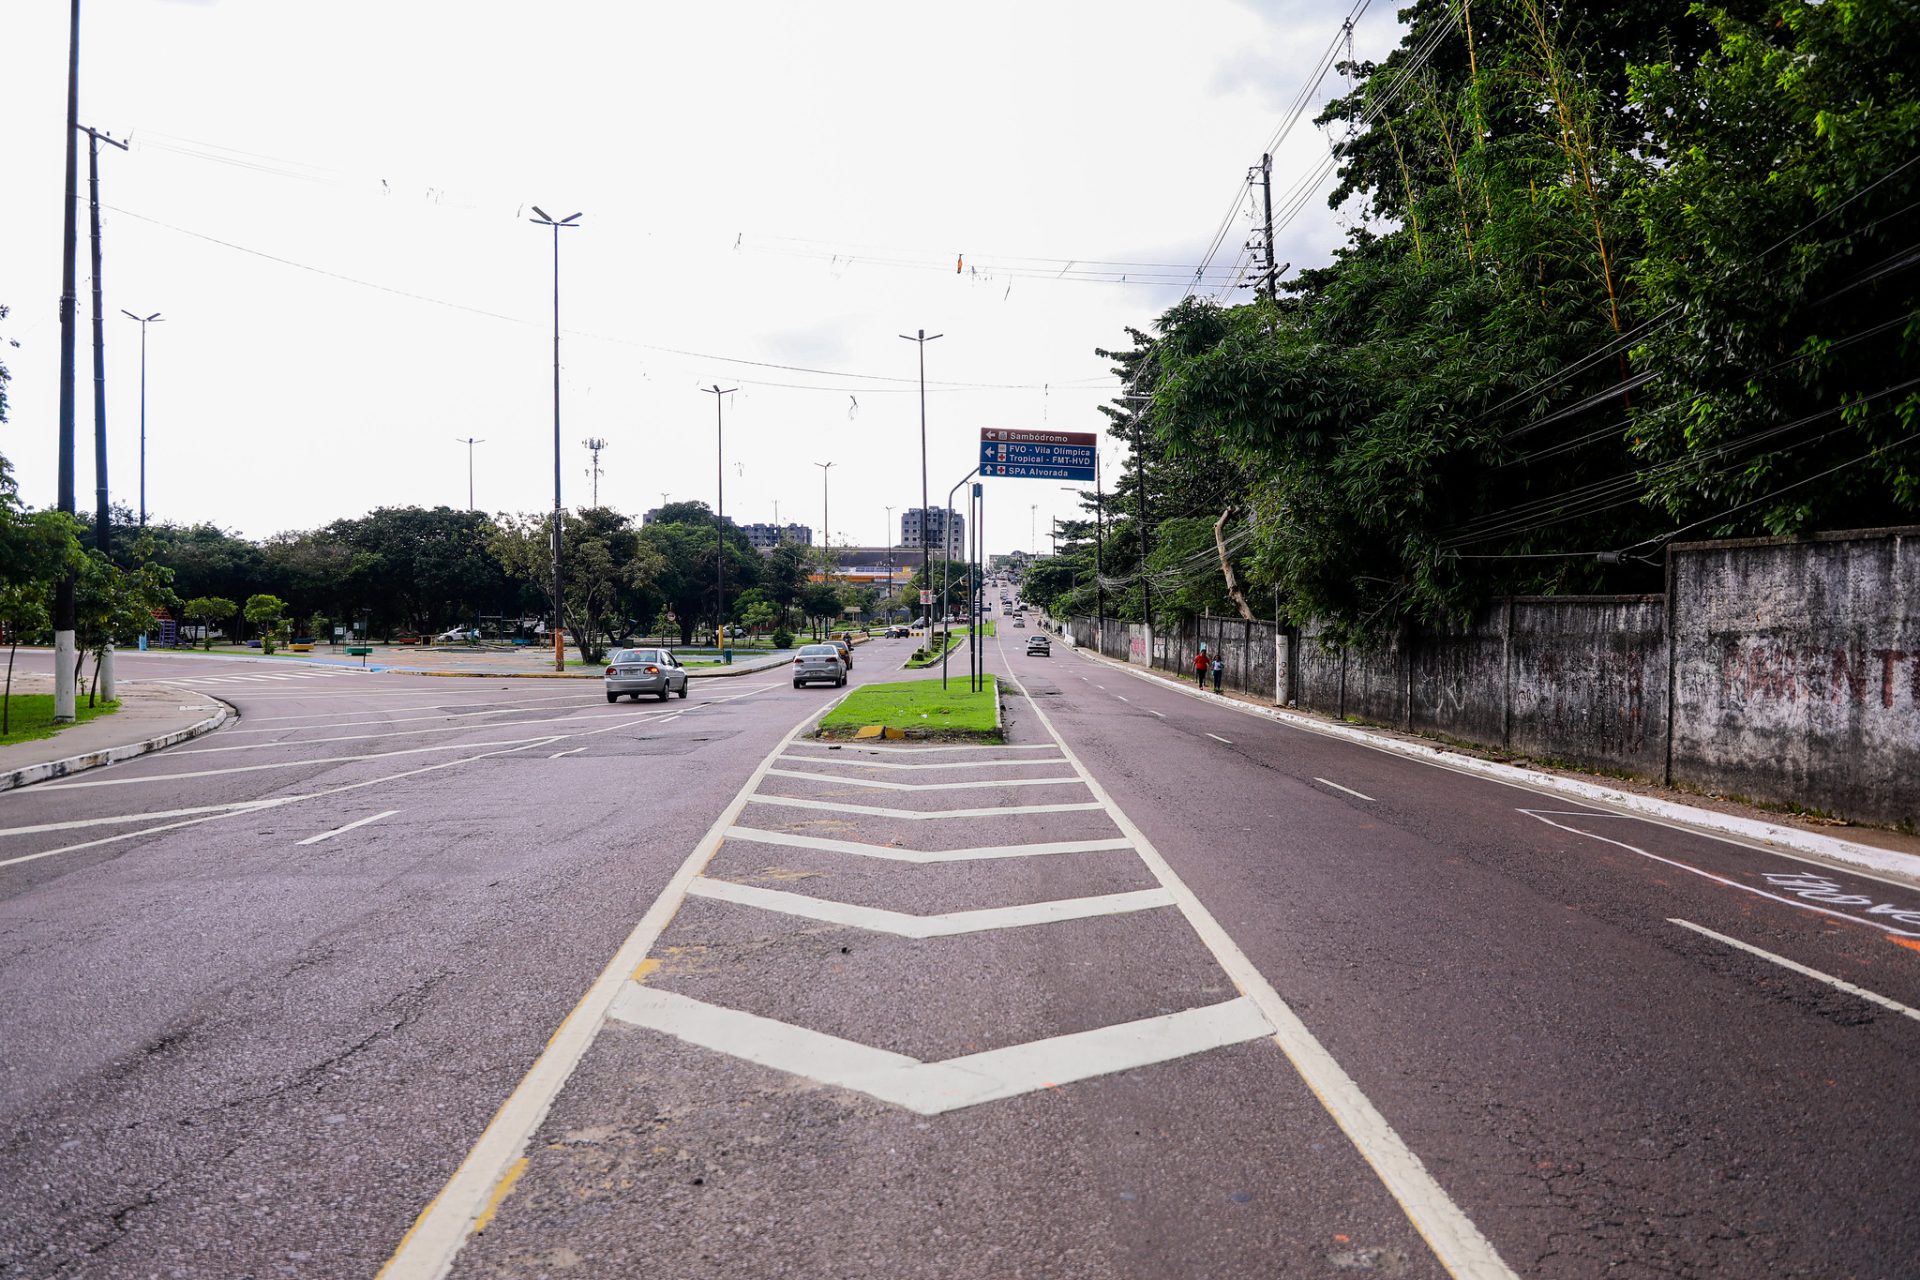 Avenidas próximas do sambódromo serão interditadas- Foto: João Viana / Semcom